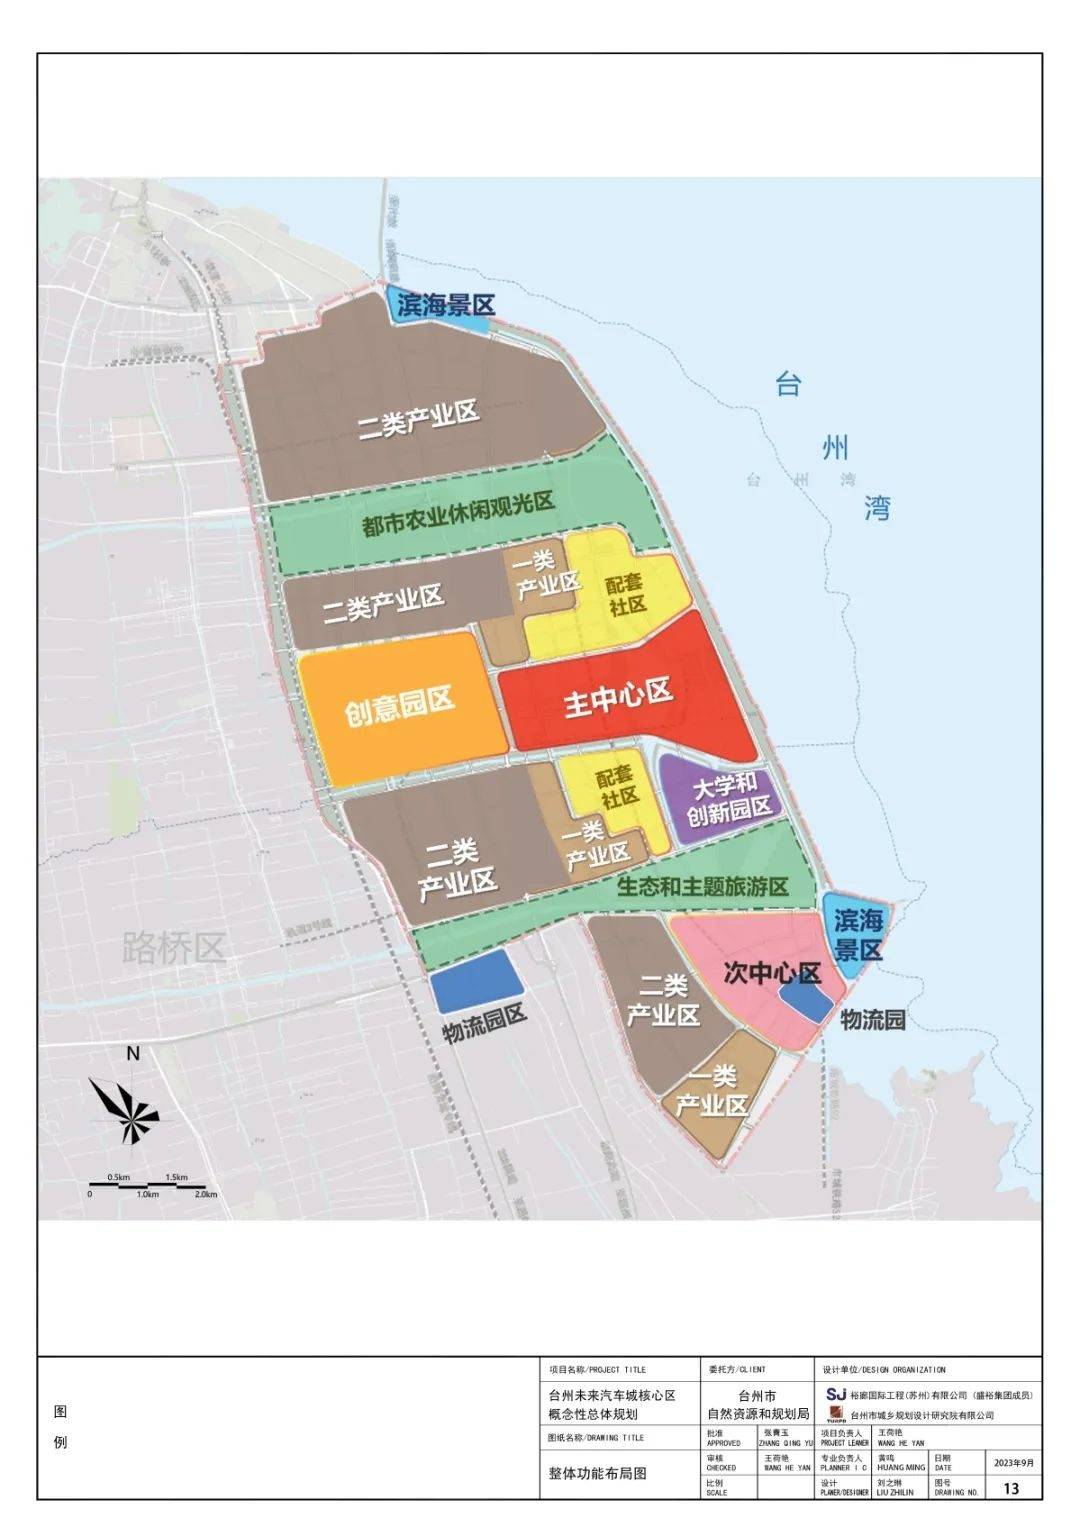 有房丨台州湾新区大规划 台州未来汽车城核心区概念性整体规划公开